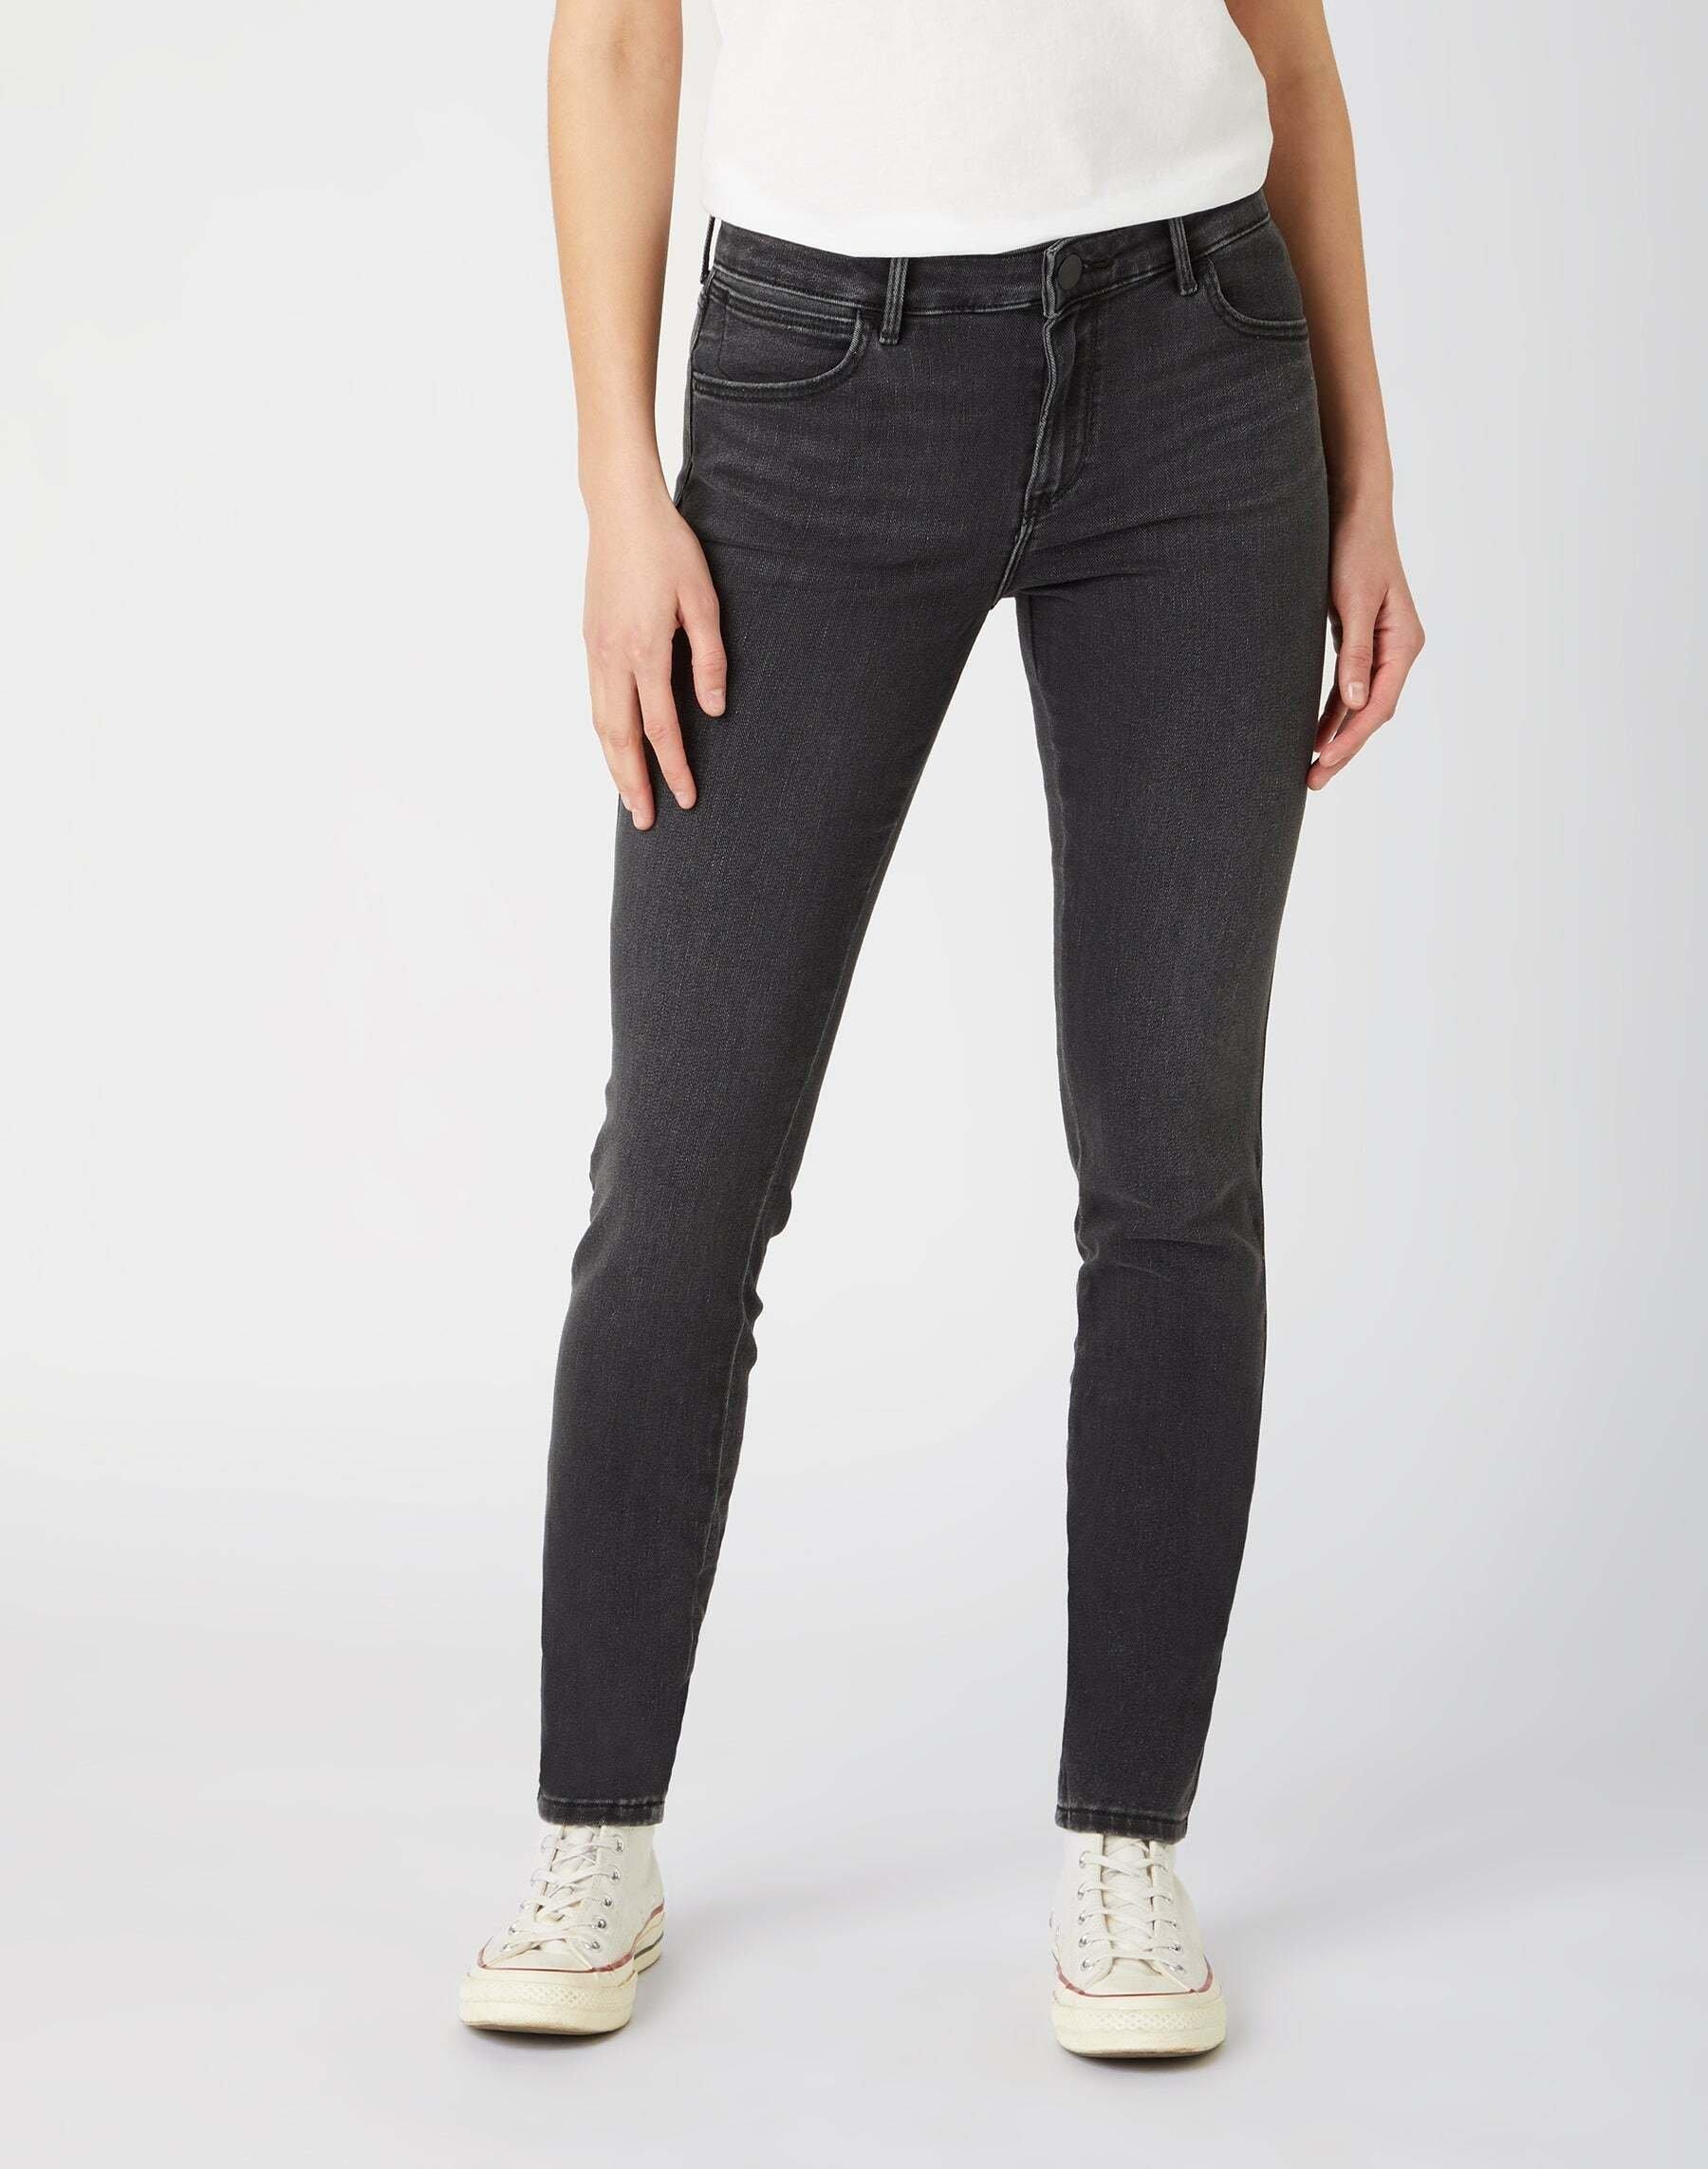 Jeans Skinny Fit Skinny Damen Schwarz Leicht L32/W25 von Wrangler